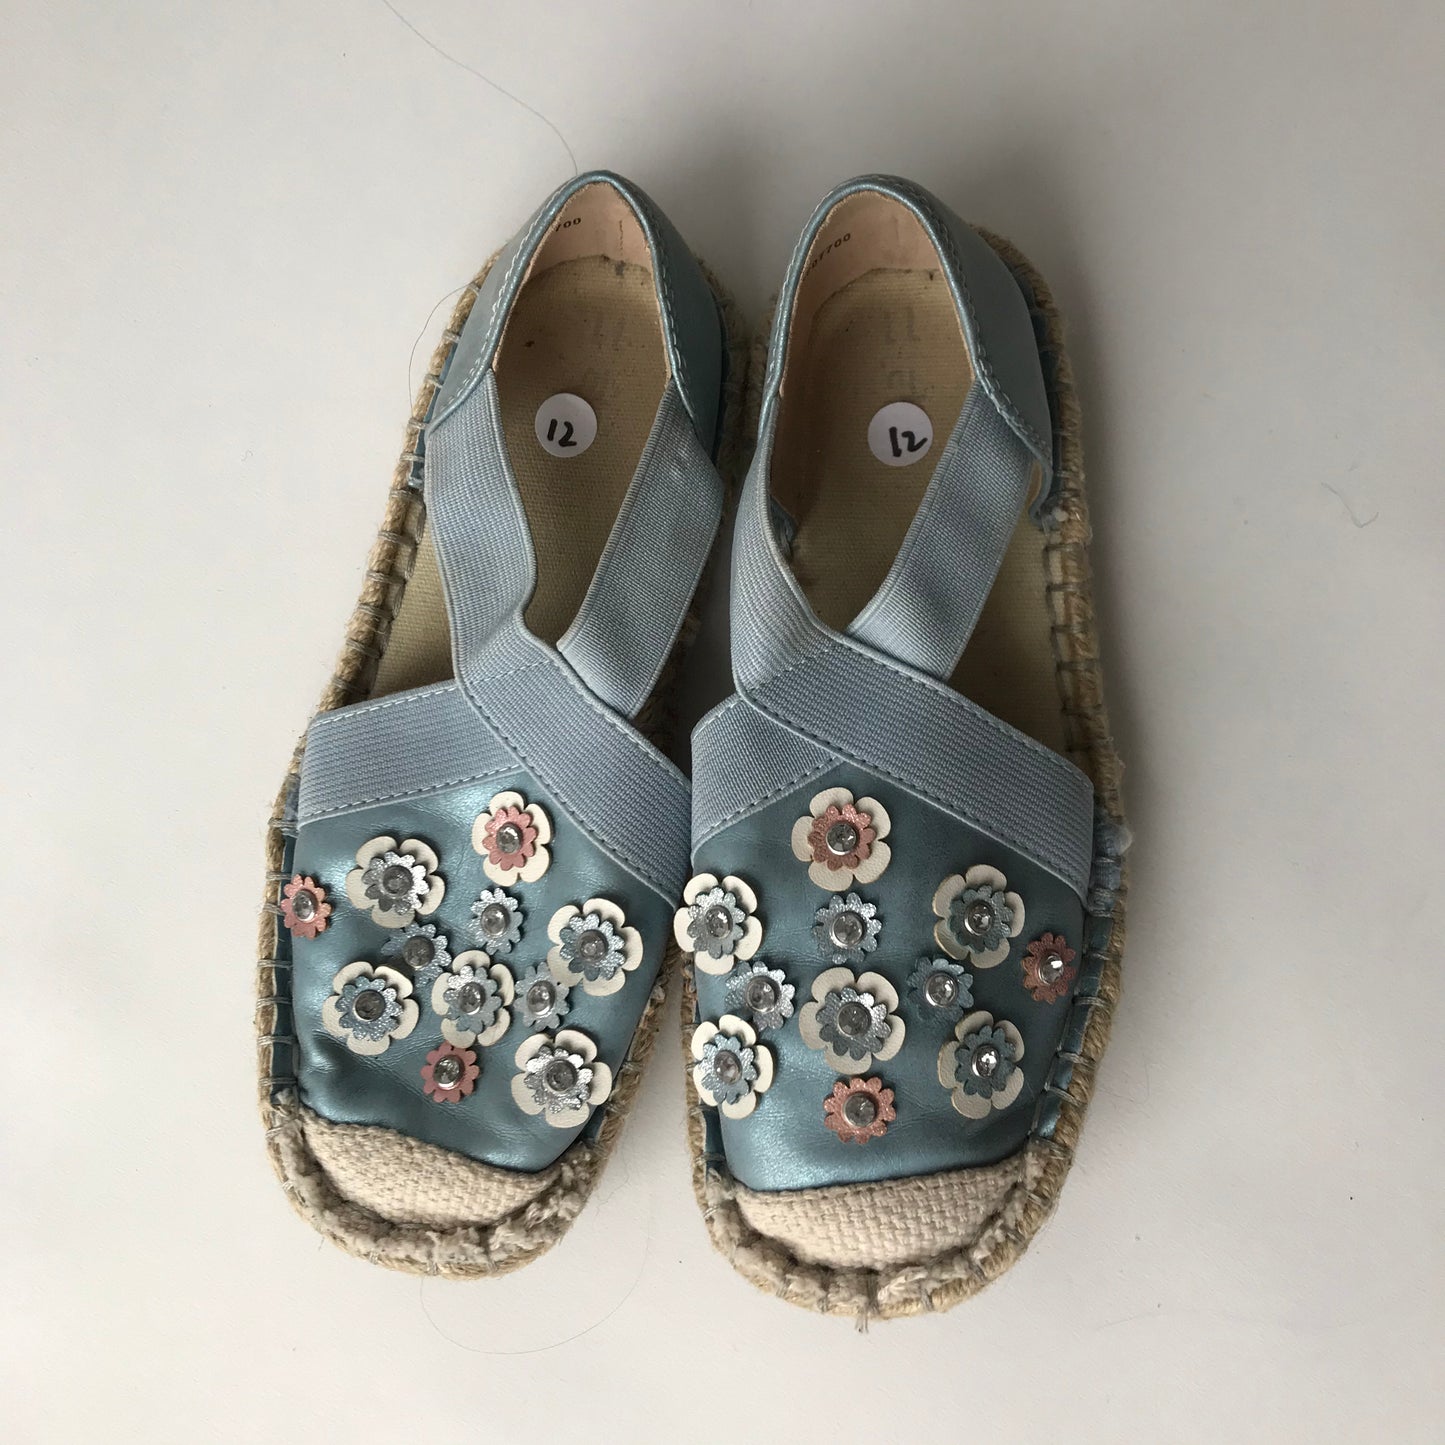 Sandals - Blue Floral - Shoe Size 12 (jr)